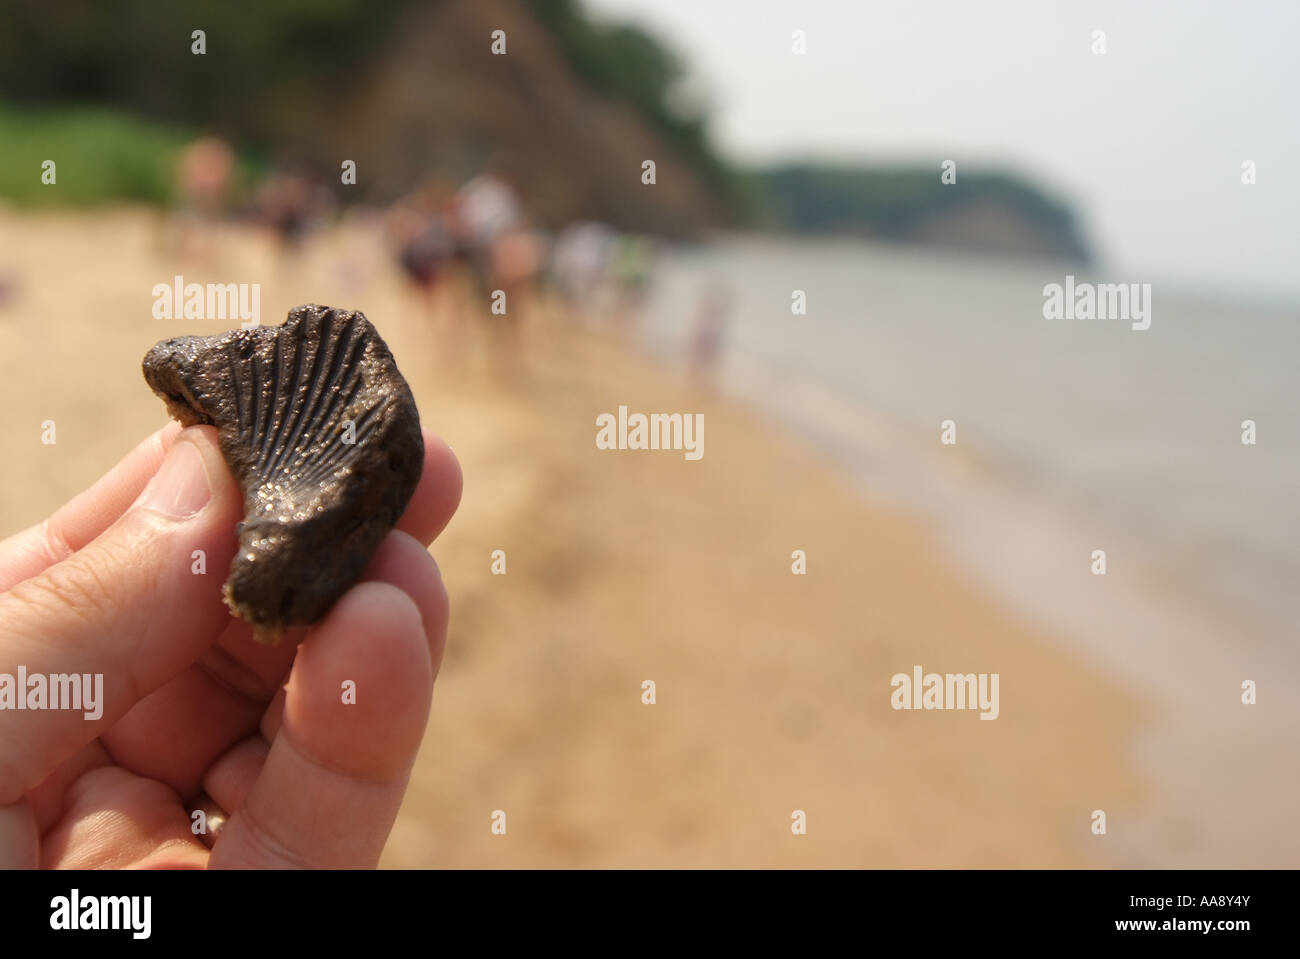 USA Maryland Calvert Cliffs State Park hält eine Hand ein Jakobsmuschel Shell Fossil gefunden am Strand Stockfoto